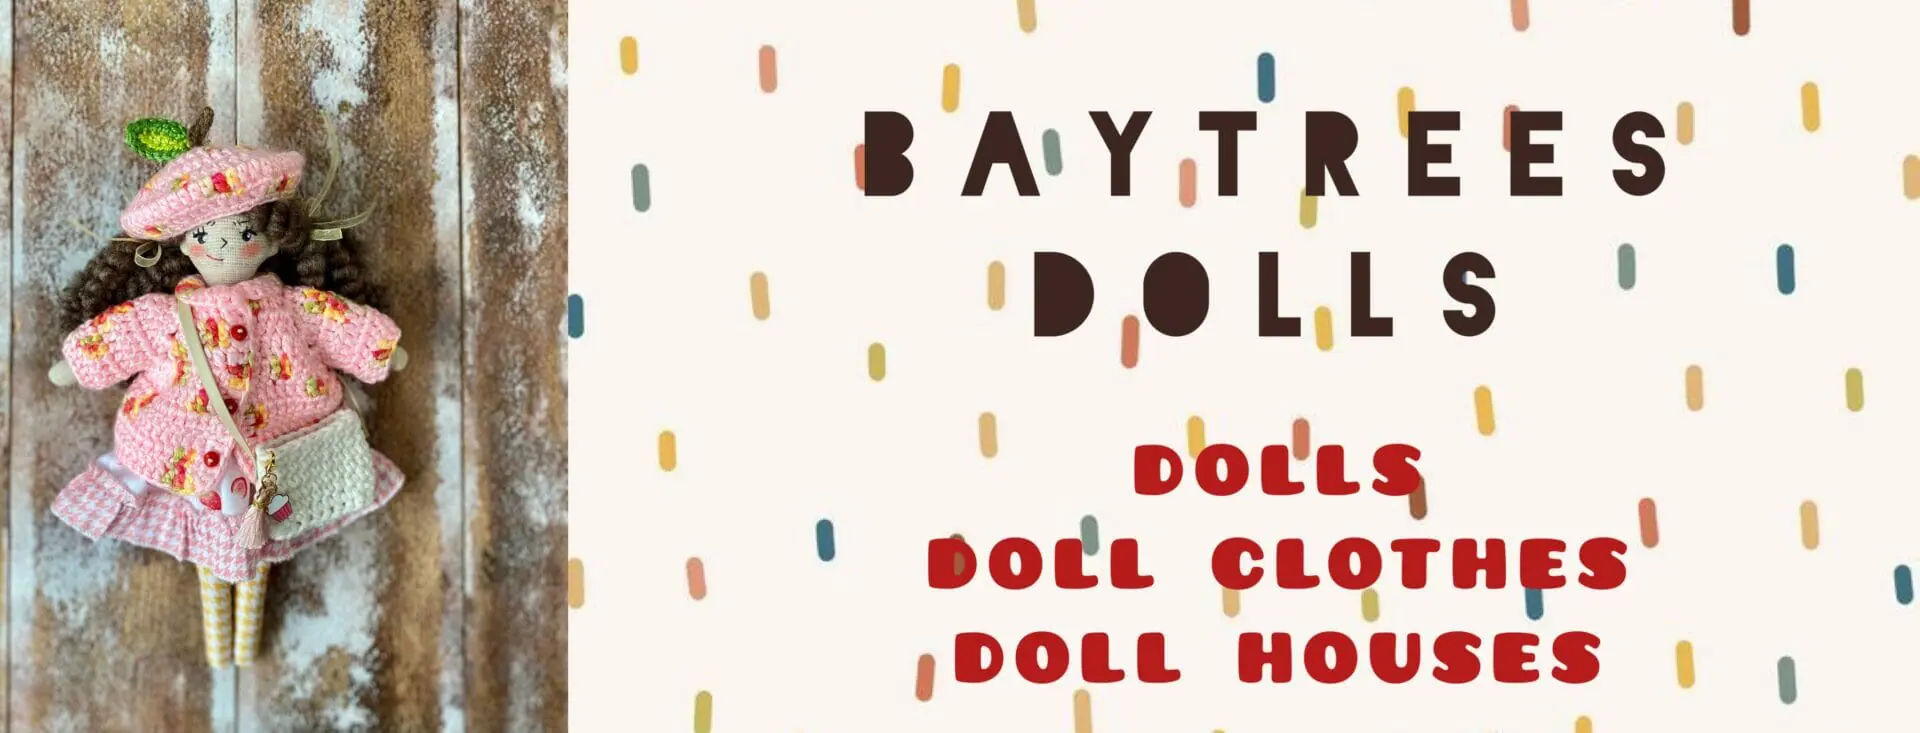 Baytrees_dolls